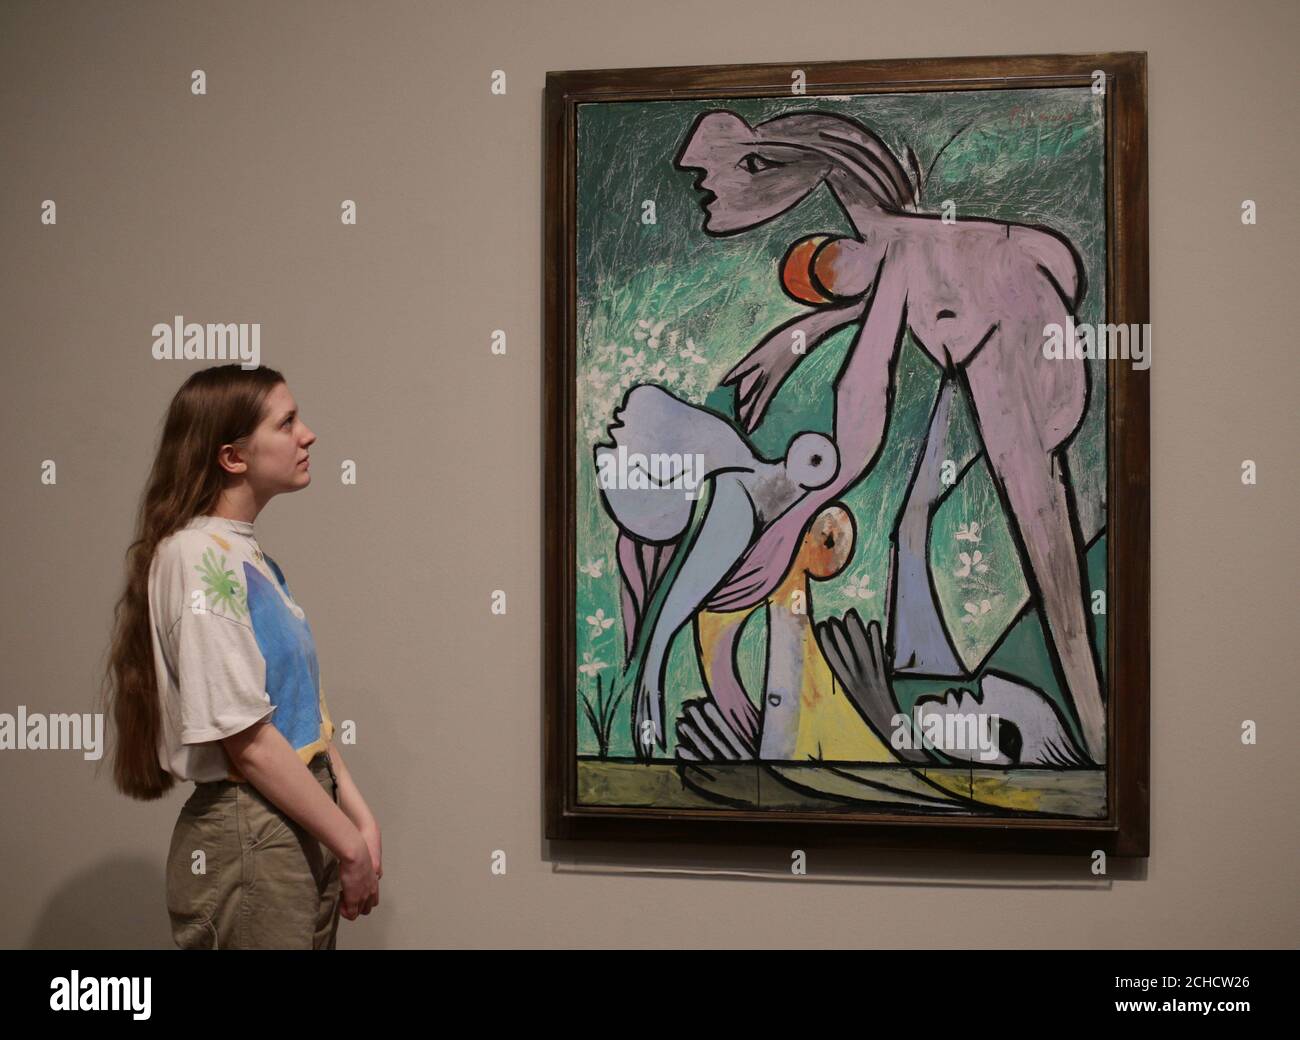 Une femme regardant le Rescue de Pablo Picasso, 1932, lors d'un aperçu de l'exposition Picasso 1932 - Amour, gloire, tragédie à Tate Modern à Londres. Banque D'Images